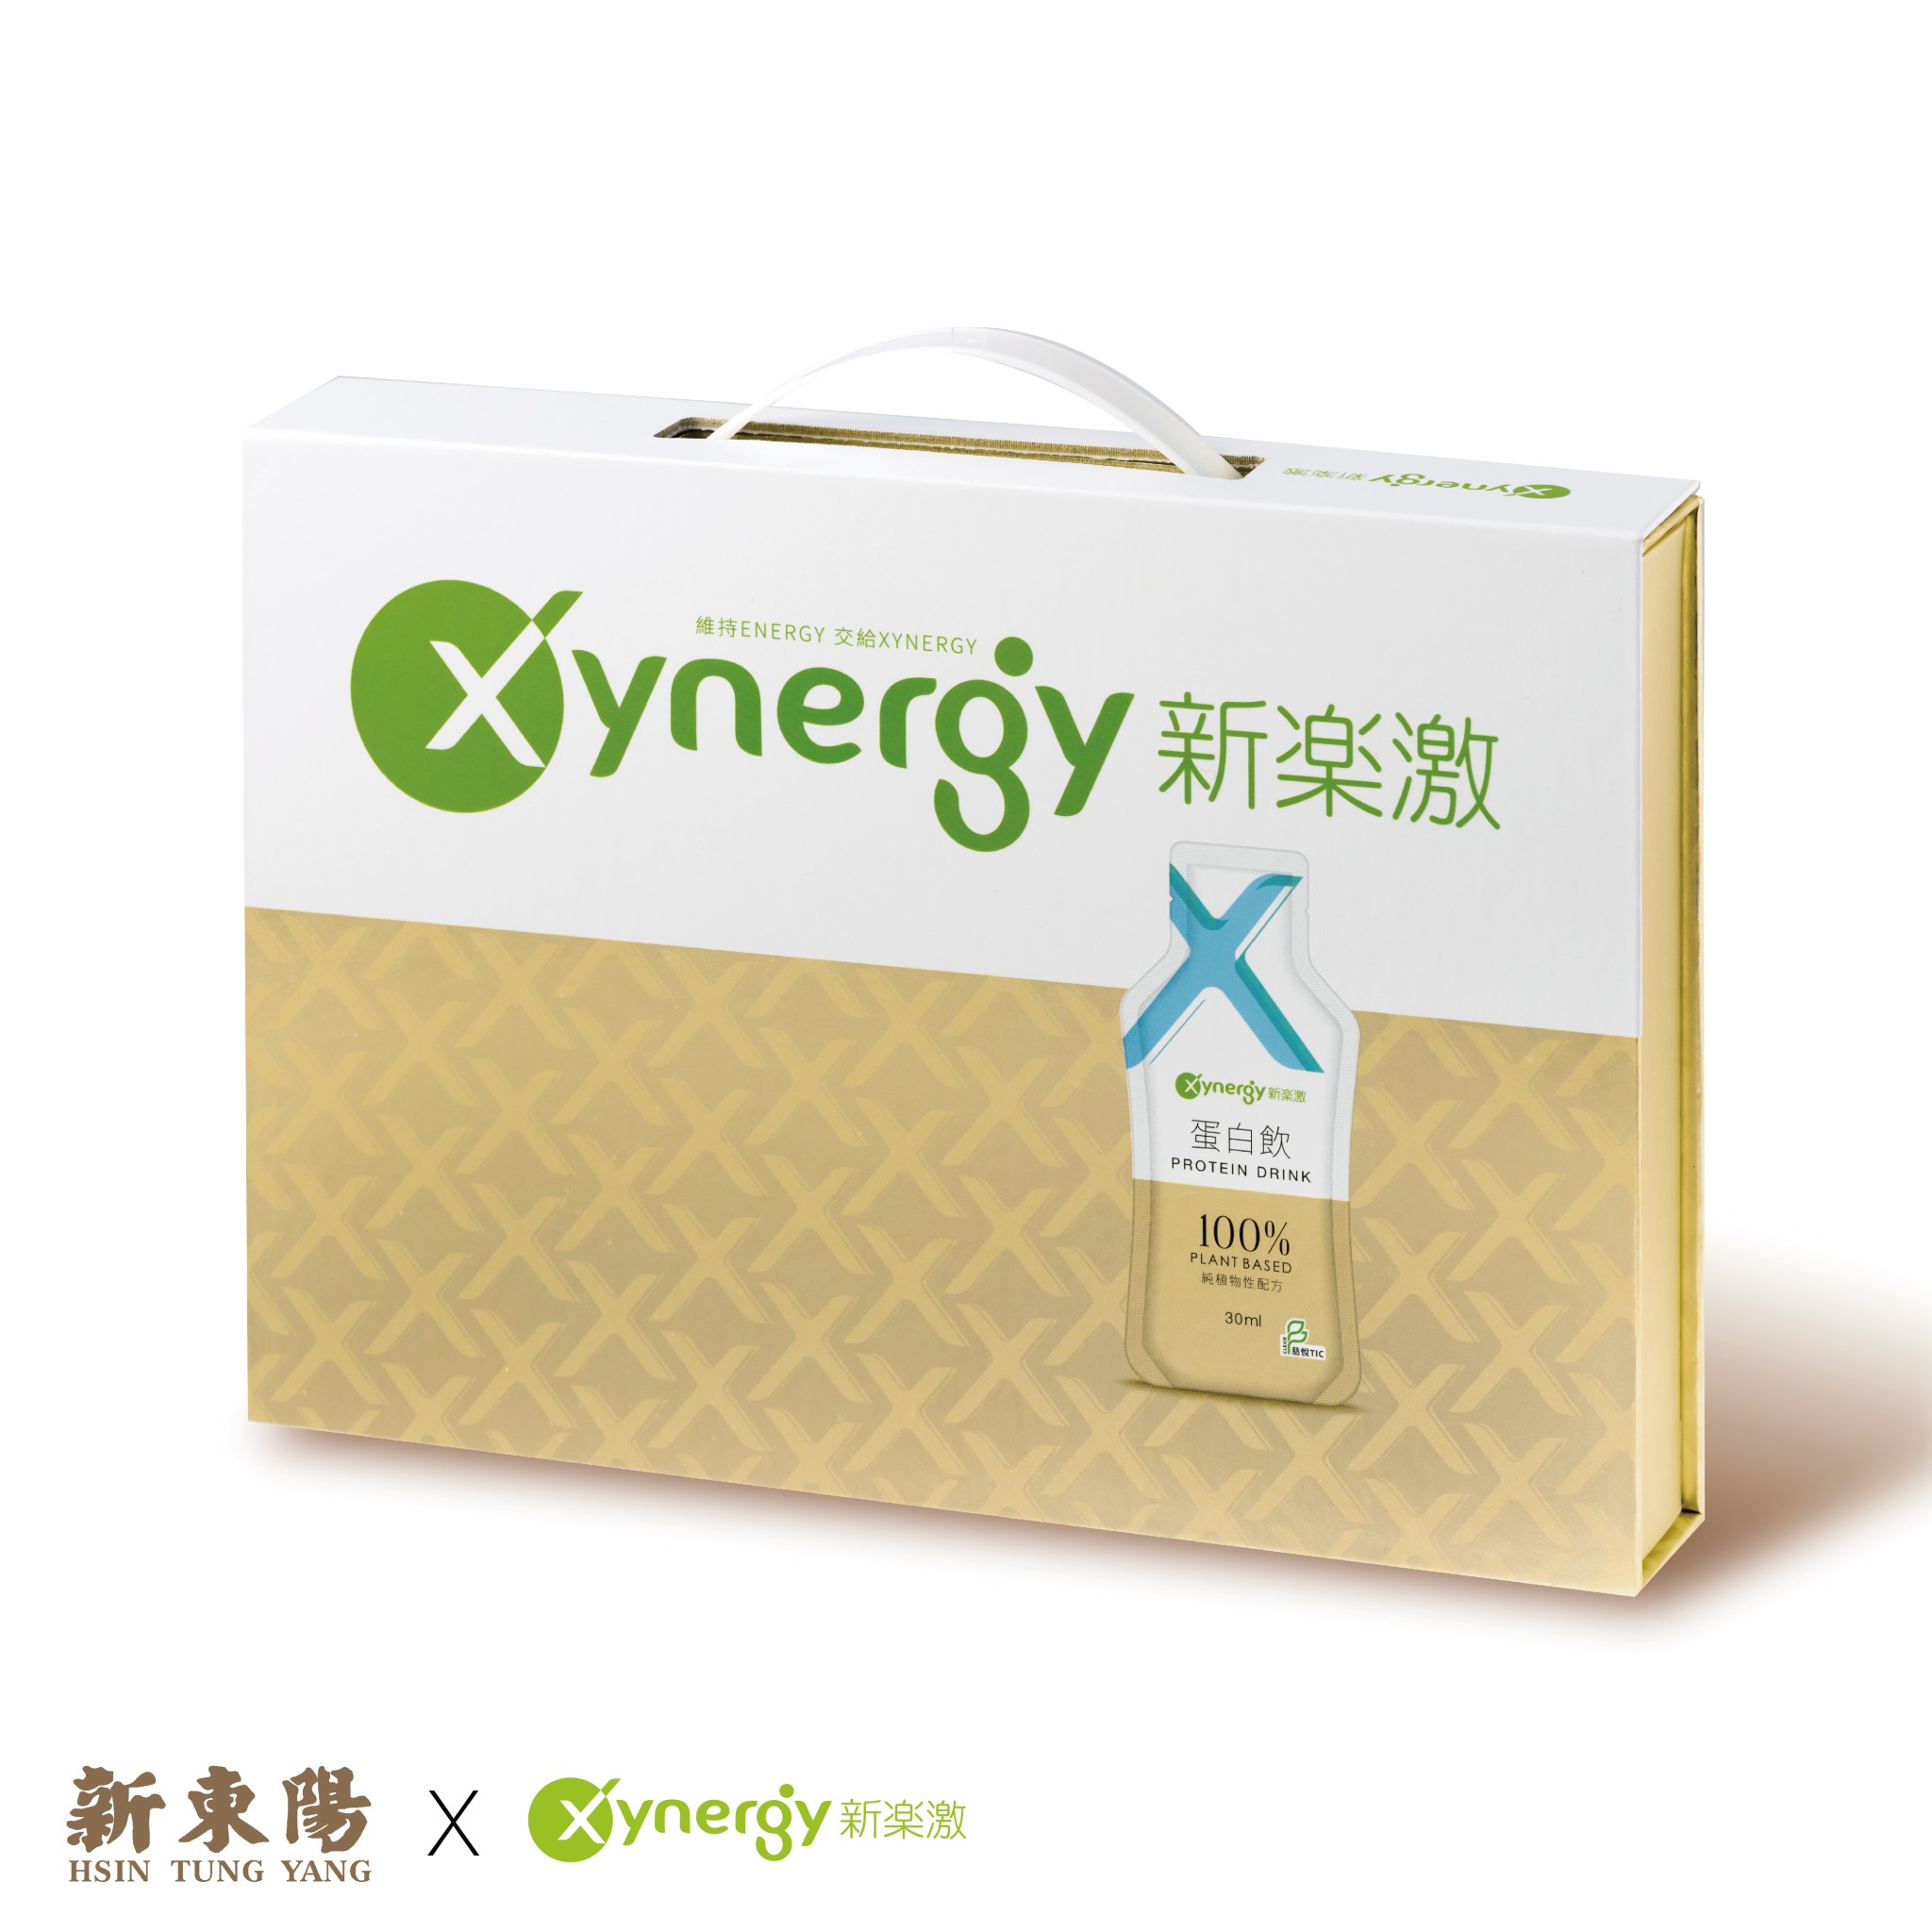 《新東陽x新樂激》Xynergy新樂激植物蛋白飲禮盒(30ml/包*15入)